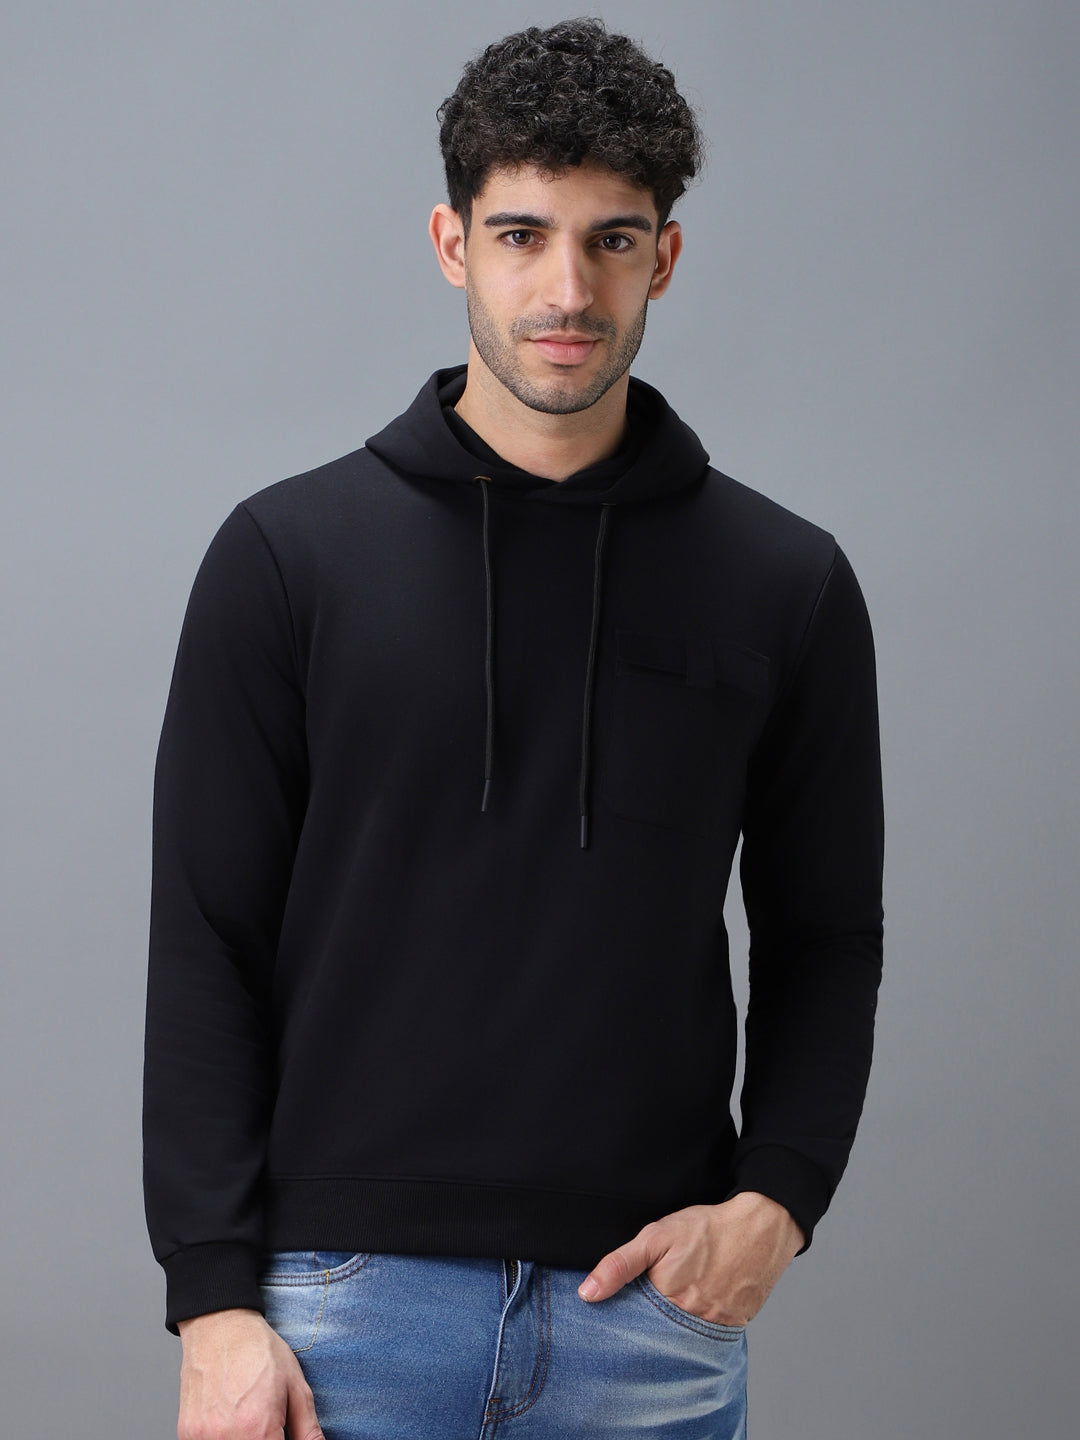 Men's Black Cotton Solid Hooded Neck Sweatshirt